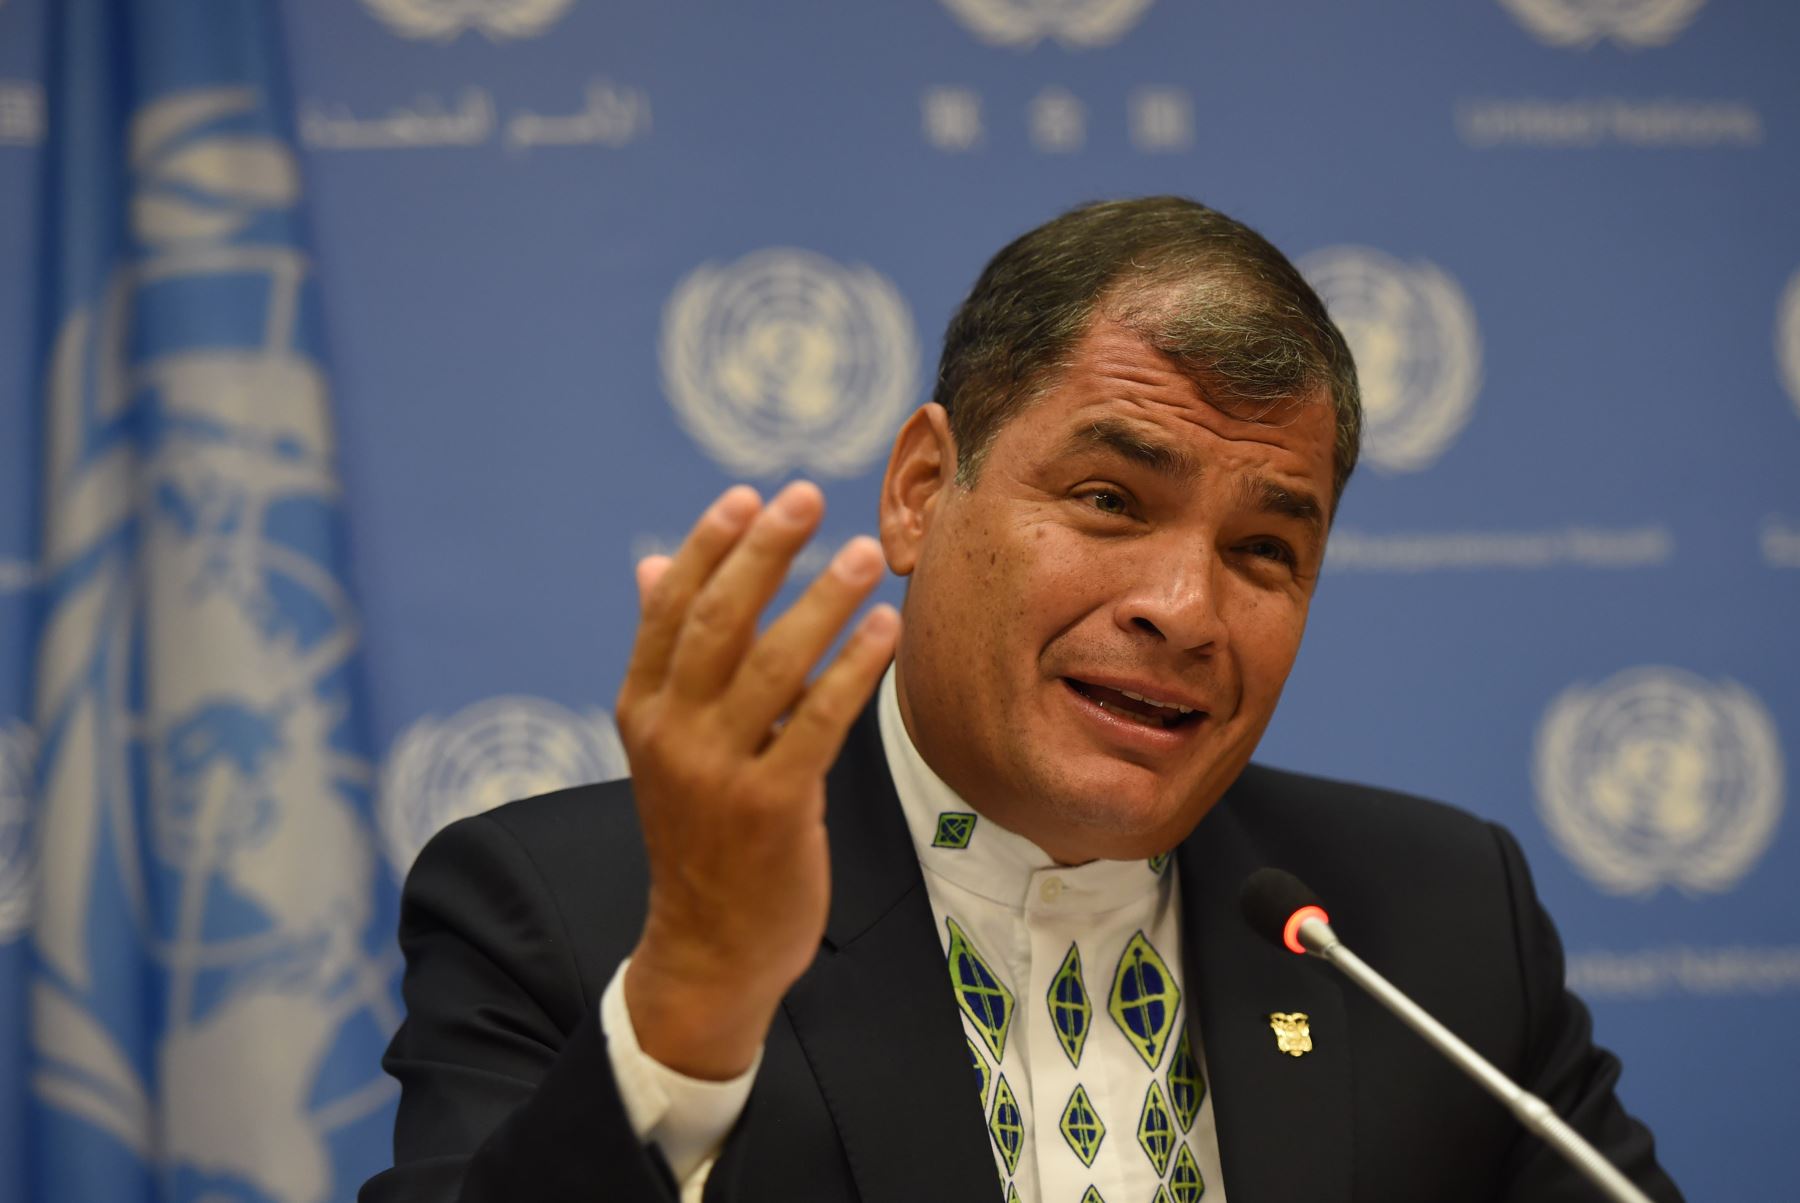 Rafael Correa consigue asilo en Bélgica y no es extraditado a Ecuador